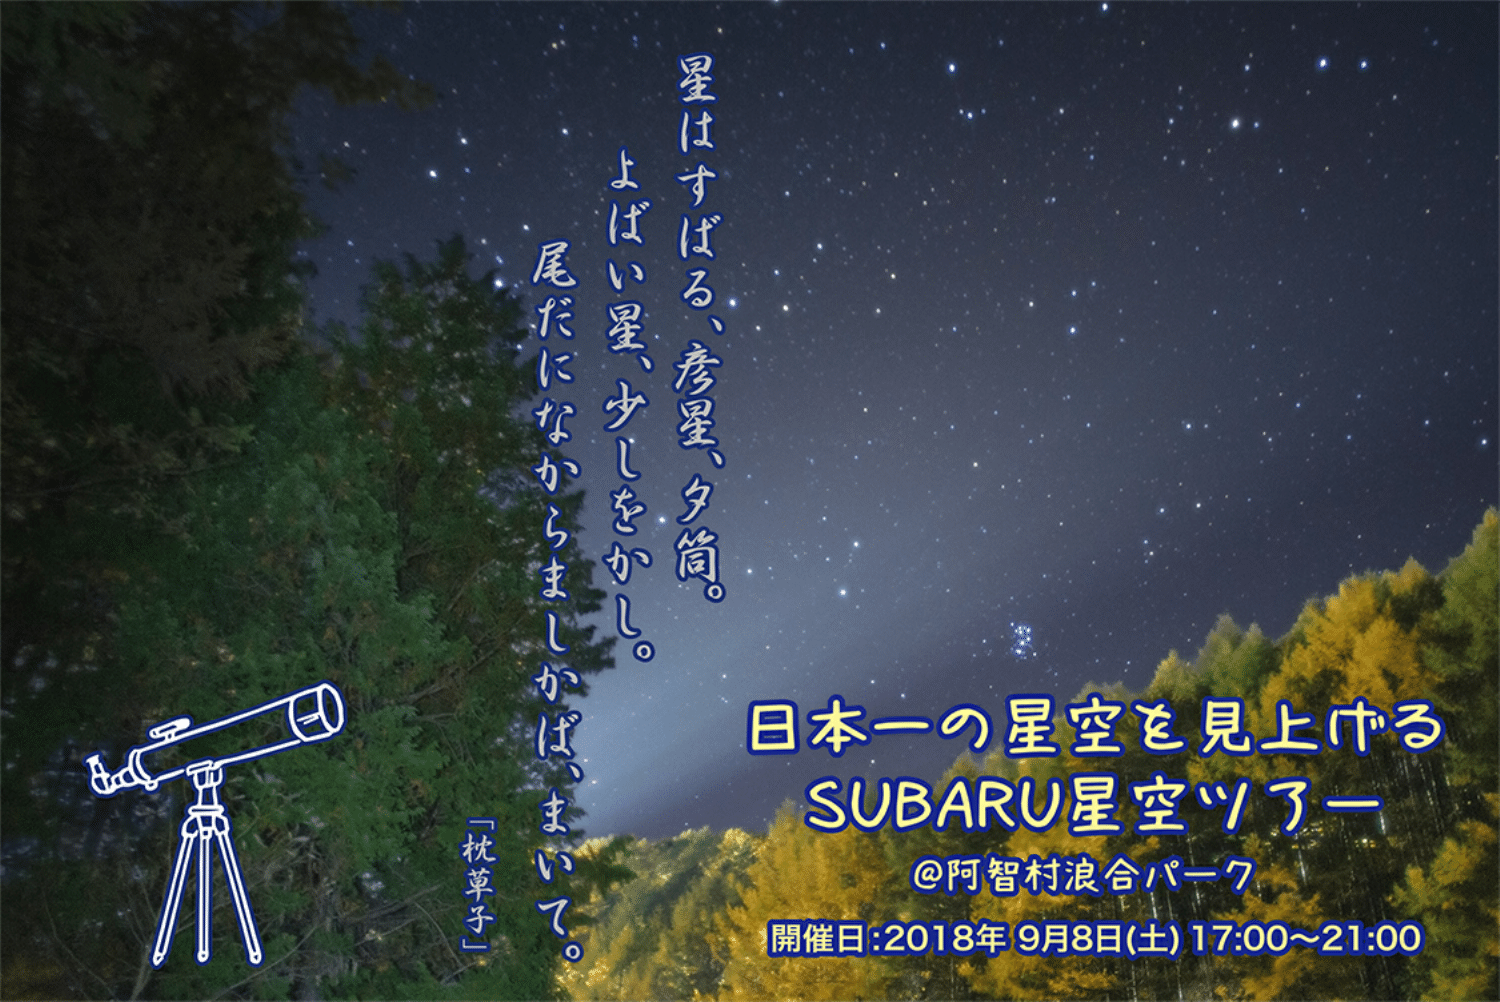 日本一の星空を見上げる SUBARU星空ツアー @阿智村浪合パーク